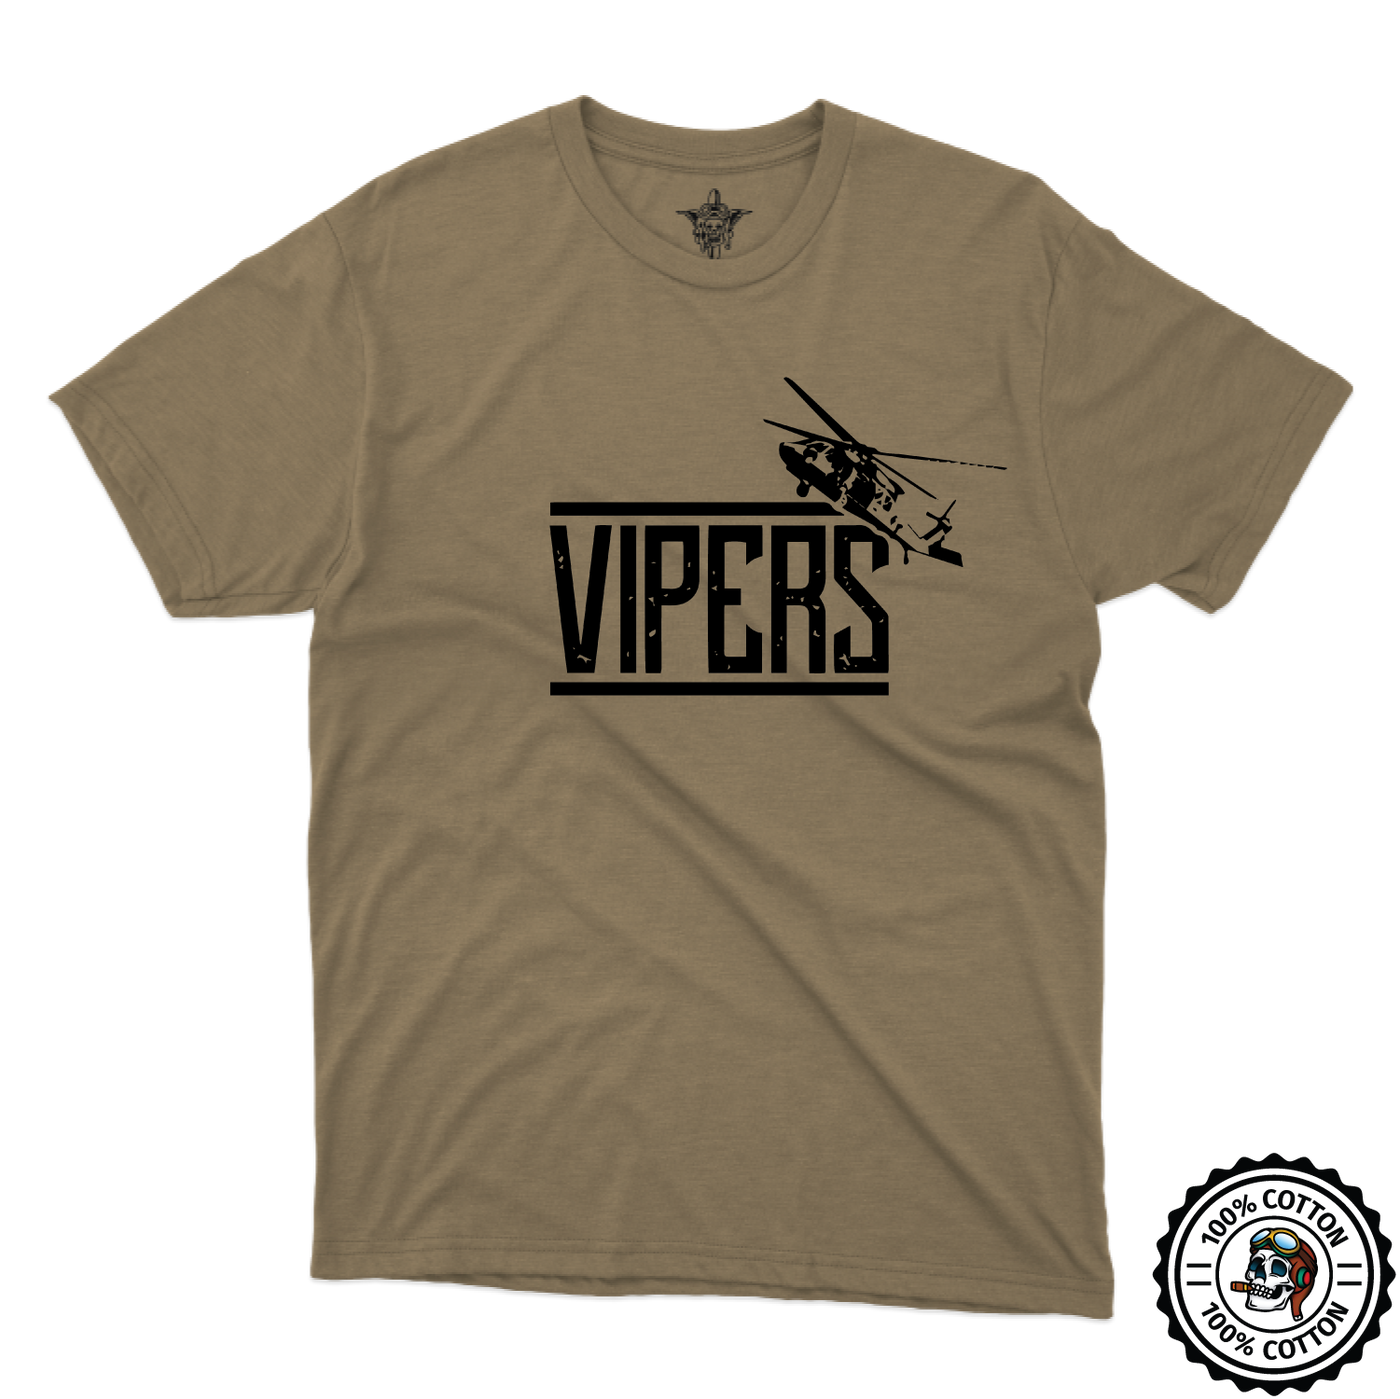 C Co, 2-82 AHB "Vipers" V2 Tan 499 T-Shirt